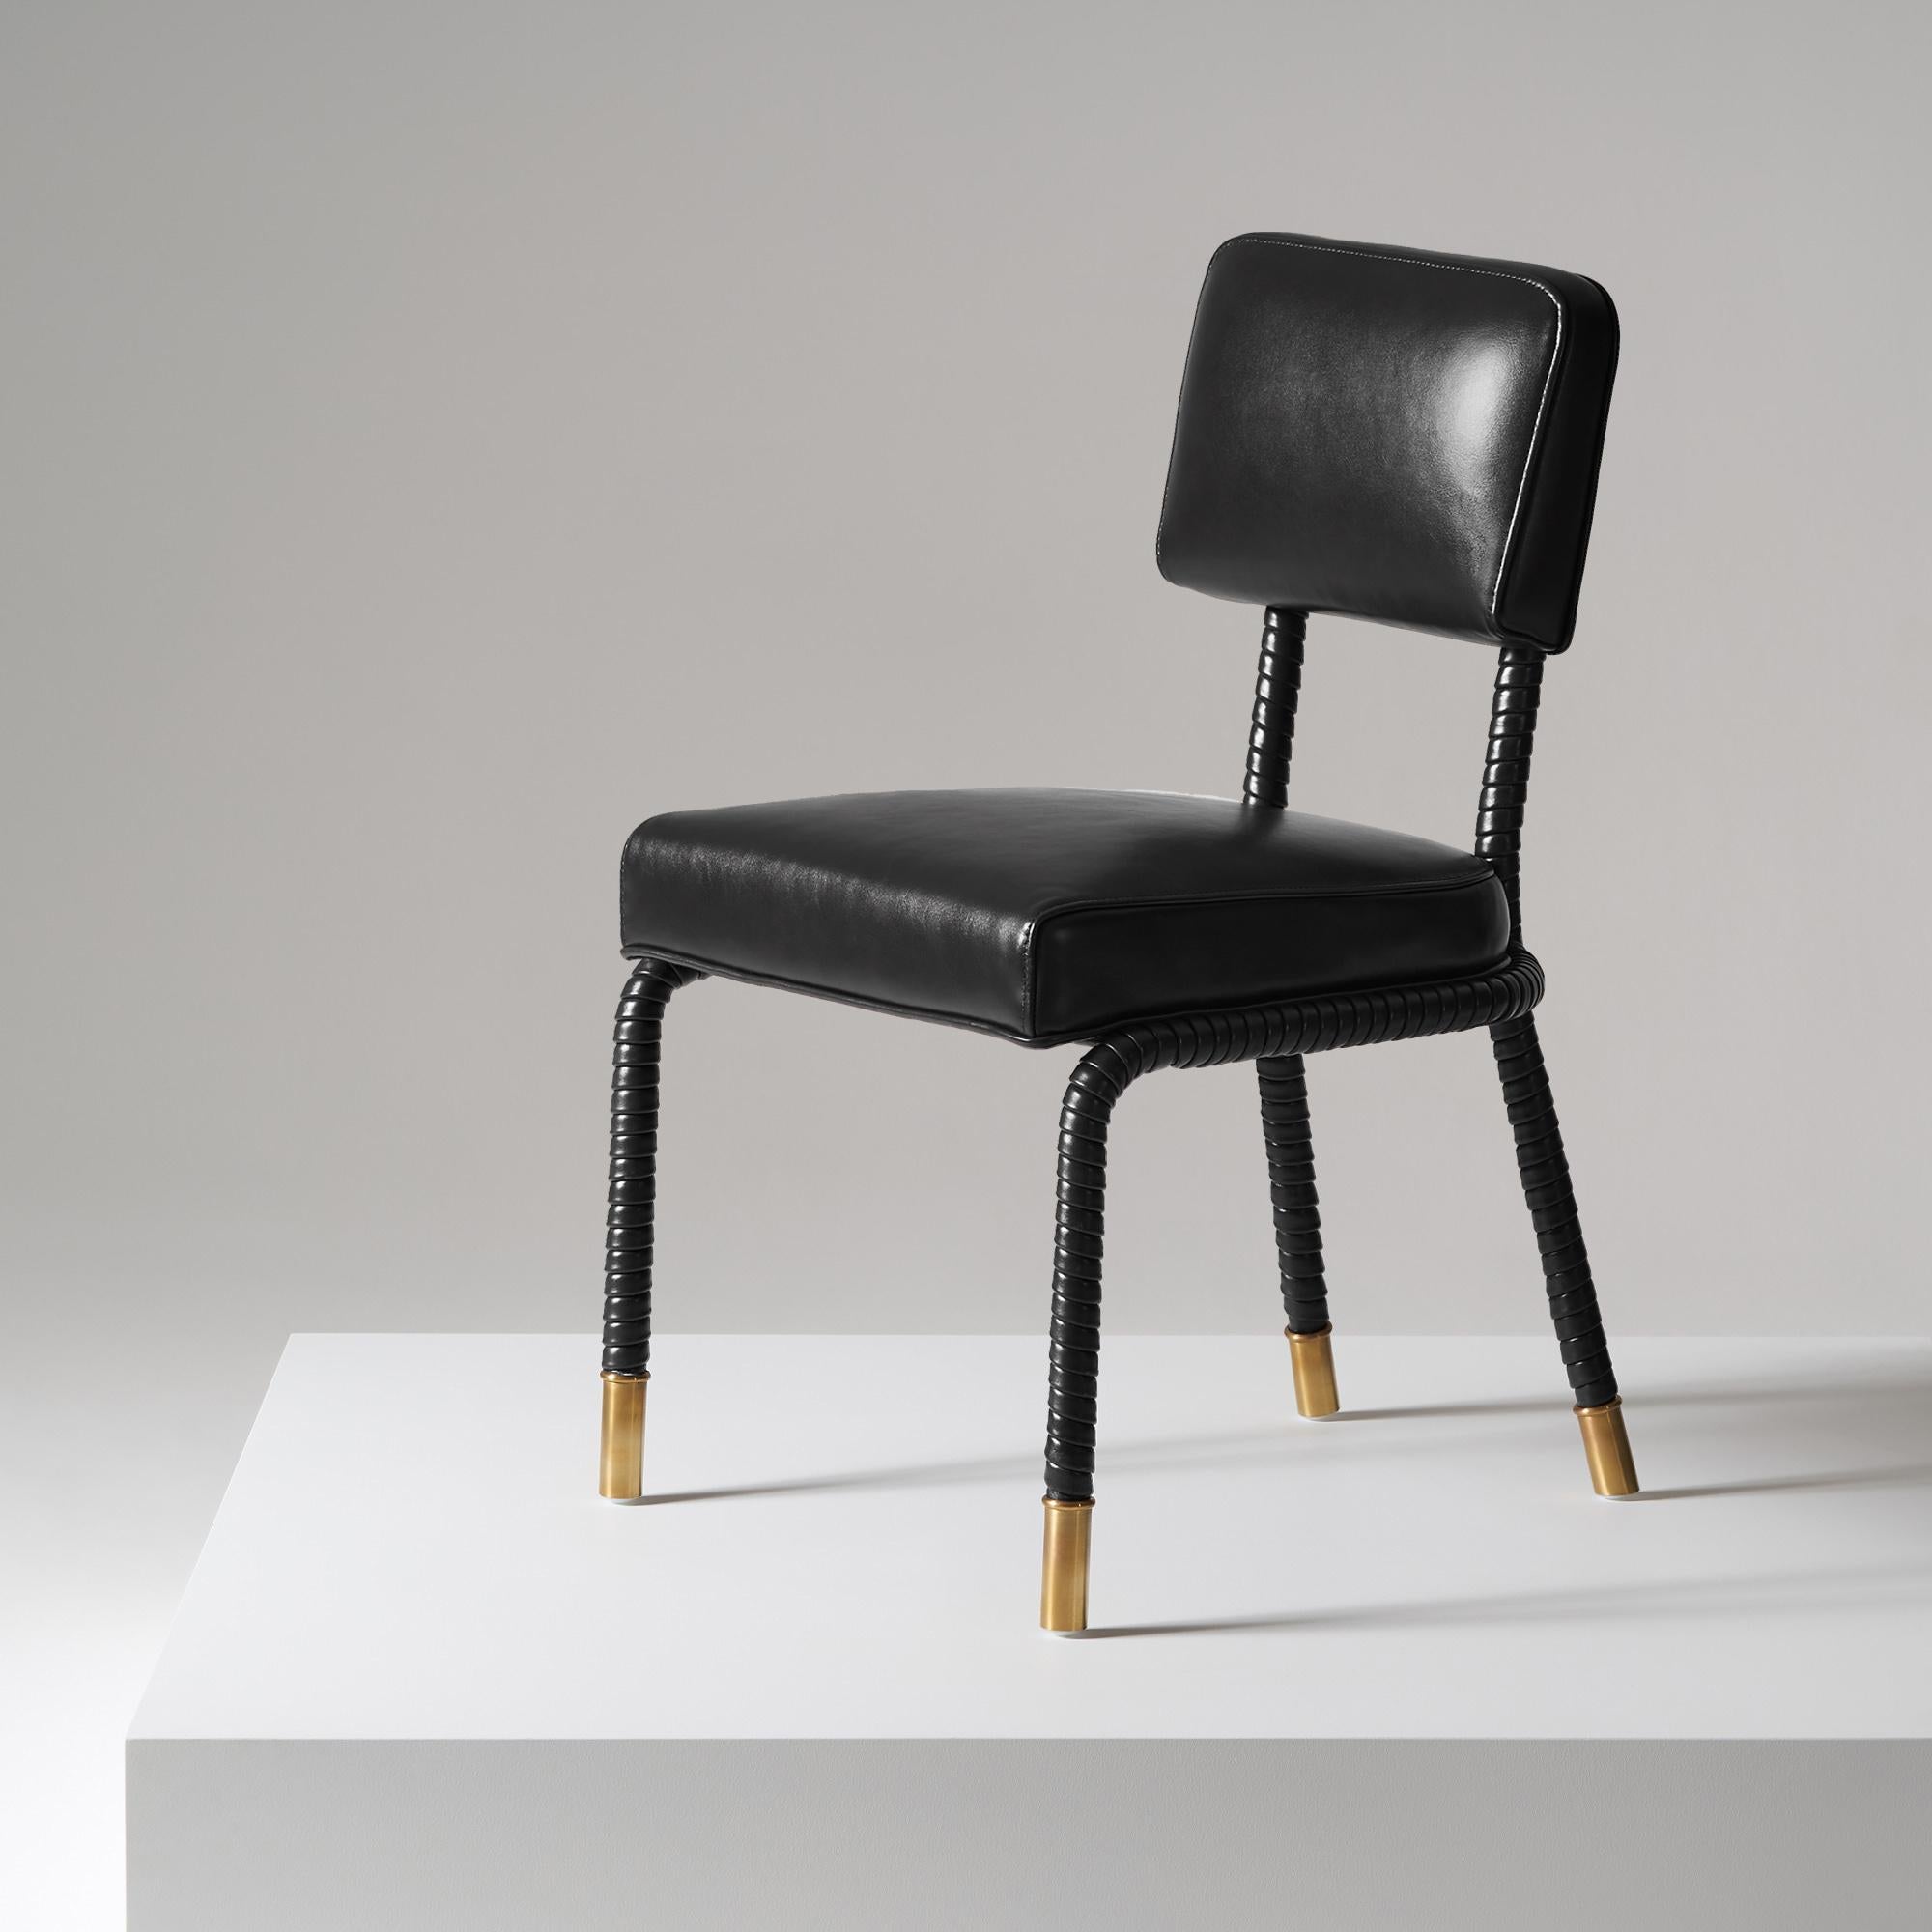 And Objects, ein von Martin Brudnizki und Nick Jeanes gegründetes Studio für Produktdesign mit Sitz in London.

Der Easton Beistellstuhl ist ein Unikat aus rostfreiem Stahl und italienischem Leder. Handgewickeltes Leder umhüllt einen Rohrrahmen,